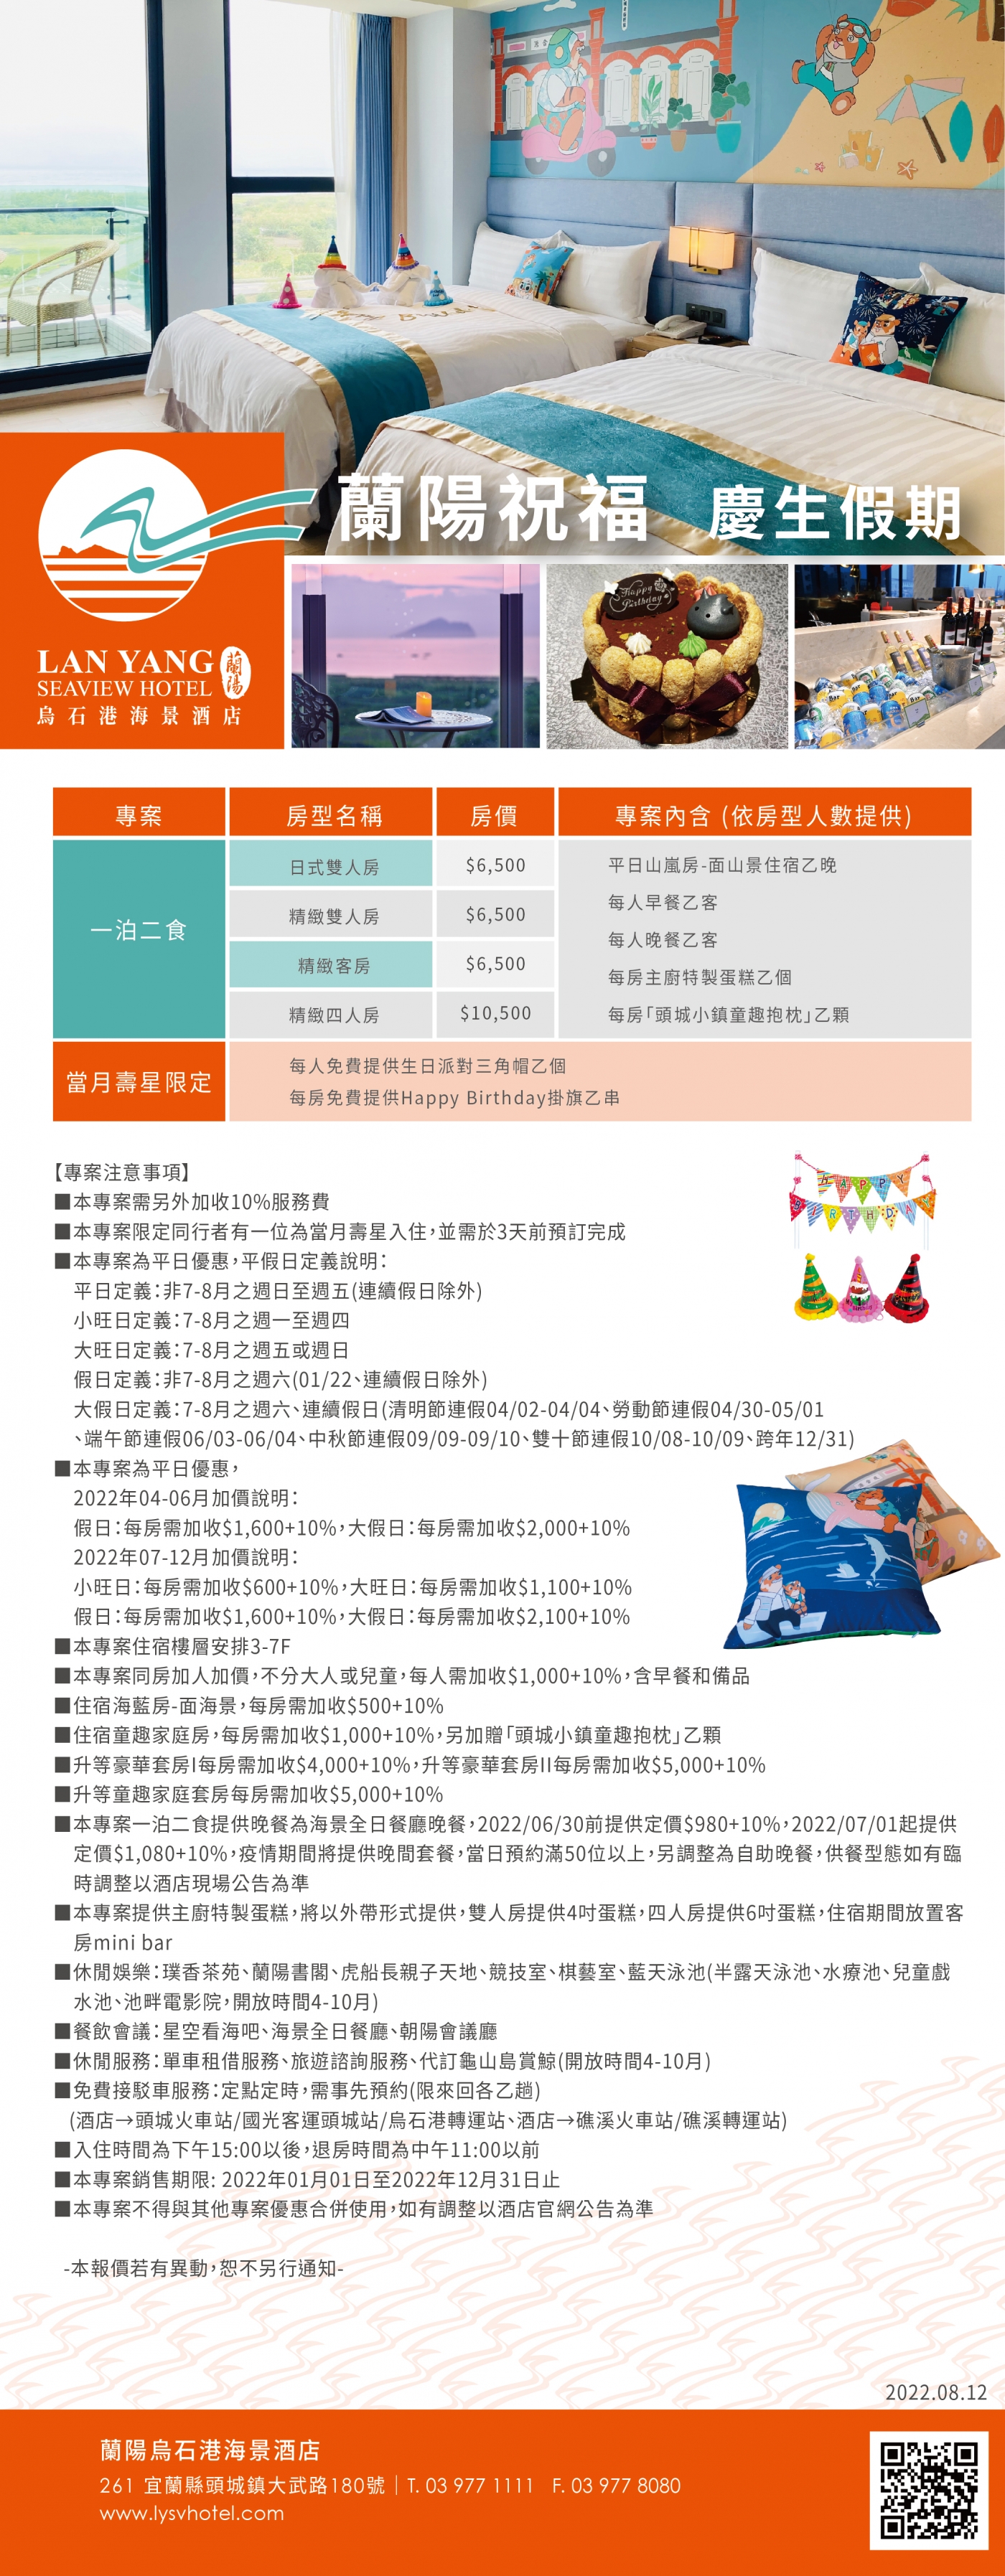 2022-蘭陽烏石港海景酒店-蘭陽祝福 慶生假期(更正五)